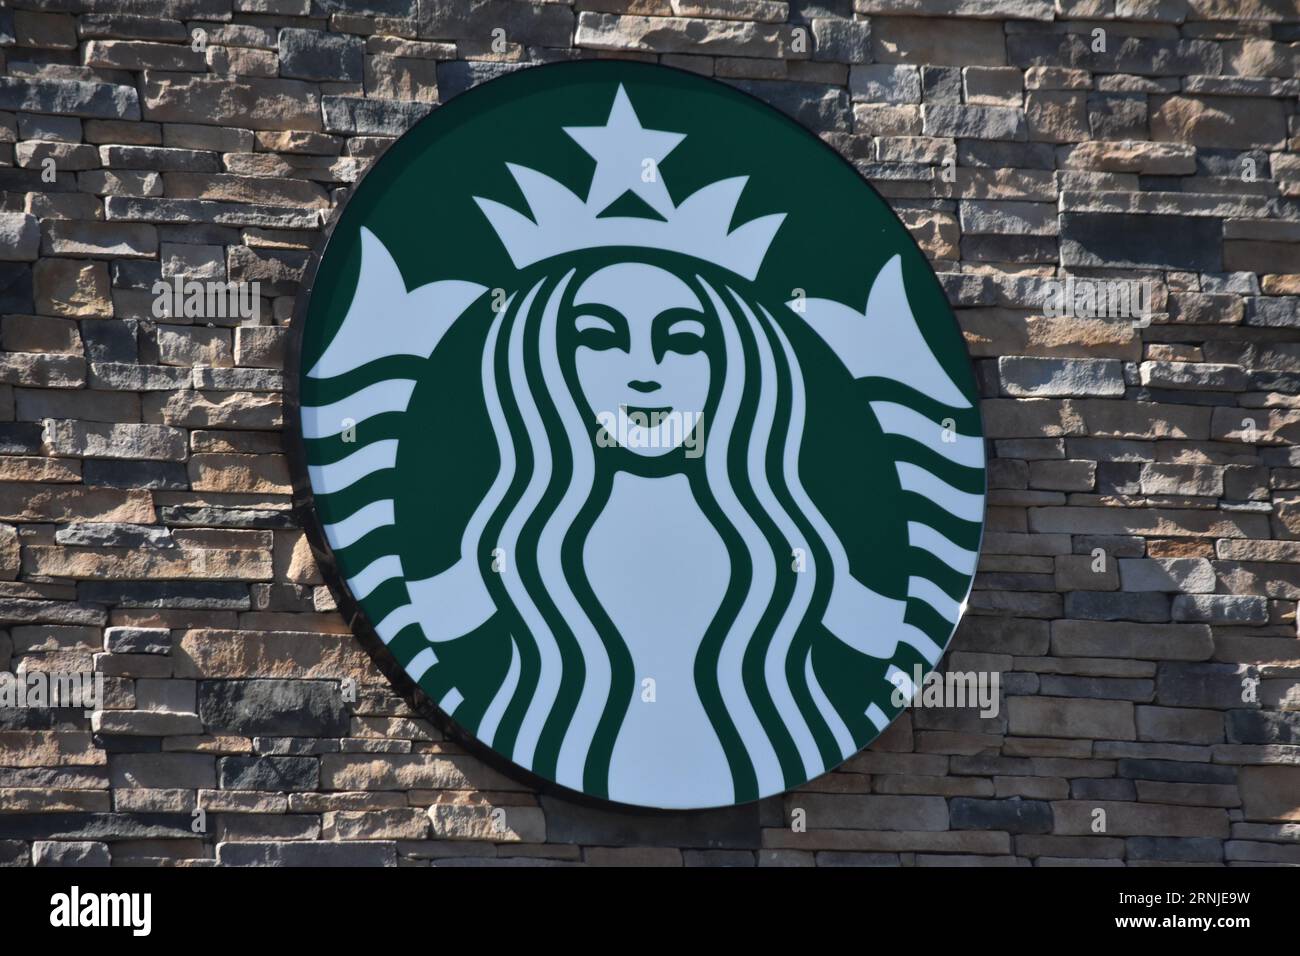 Das Starbucks Logo ist auf der Außenseite eines seiner Restaurants in Ledgewood zu sehen. Starbucks-Mitarbeiter streiken in den New Jersey-Städten Montclair, Summit und Ledgewood und streiken auch in Danbury, Connecticut. Arbeiter gingen von der Arbeit in den verschiedenen Filialen des Coffee Shops, sie gingen in einen unfairen Arbeitsstreik (ULP), um gegen die Entlassung von Celeste Cruz, Schichtleiterin am Starbucks-Standort Montclair, New Jersey, zu protestieren. „Der heutige ULP-Streik ist ein Protest gegen die unfaire Entlassung von Celeste Cruz, die seit über fünf Jahren bei Starbucks beschäftigt ist, und ihr Recht, Seeki zu versammeln Stockfoto